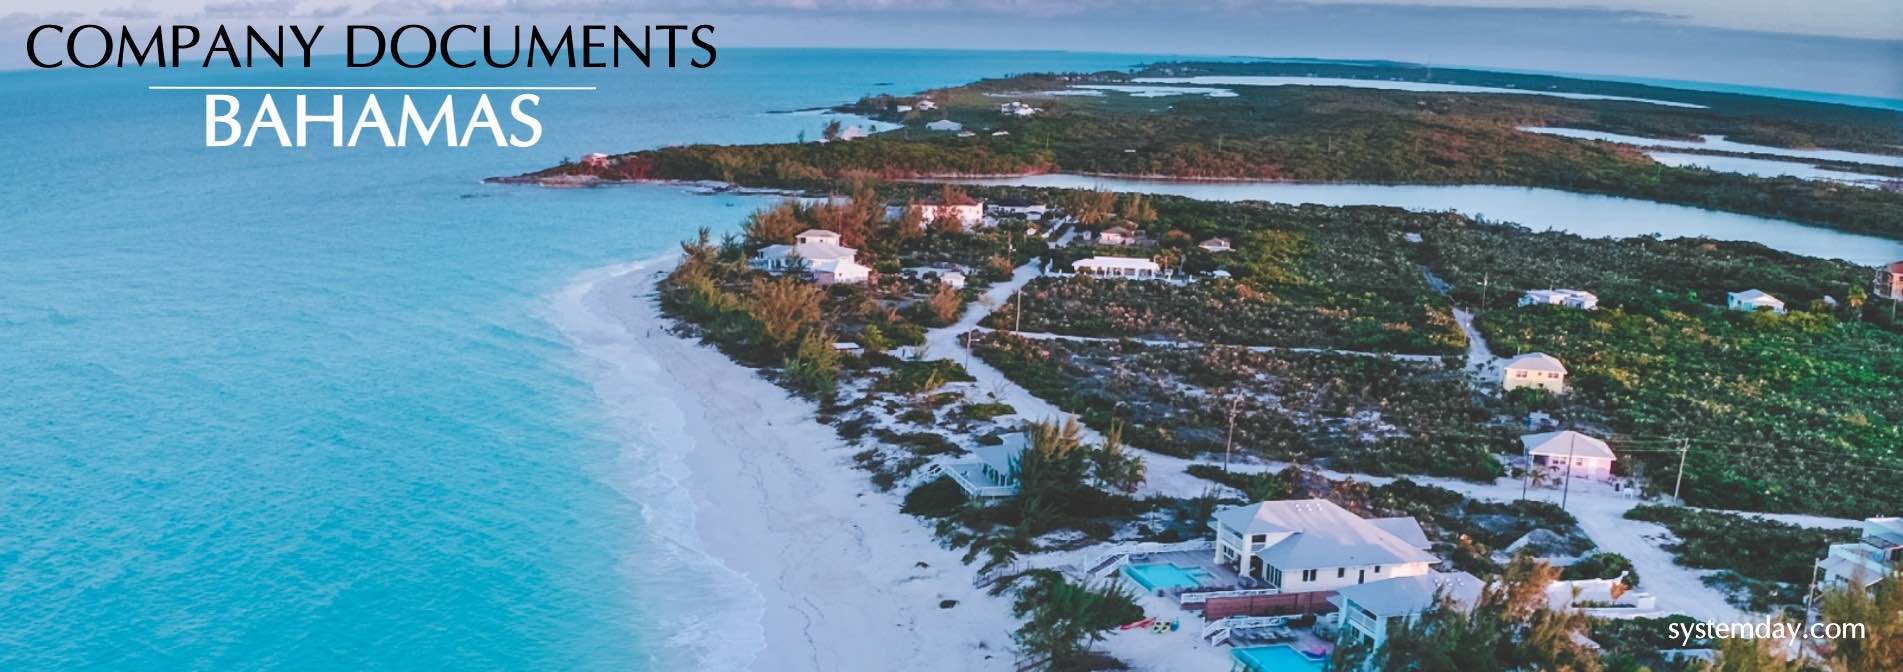 Bahamas Company Documents